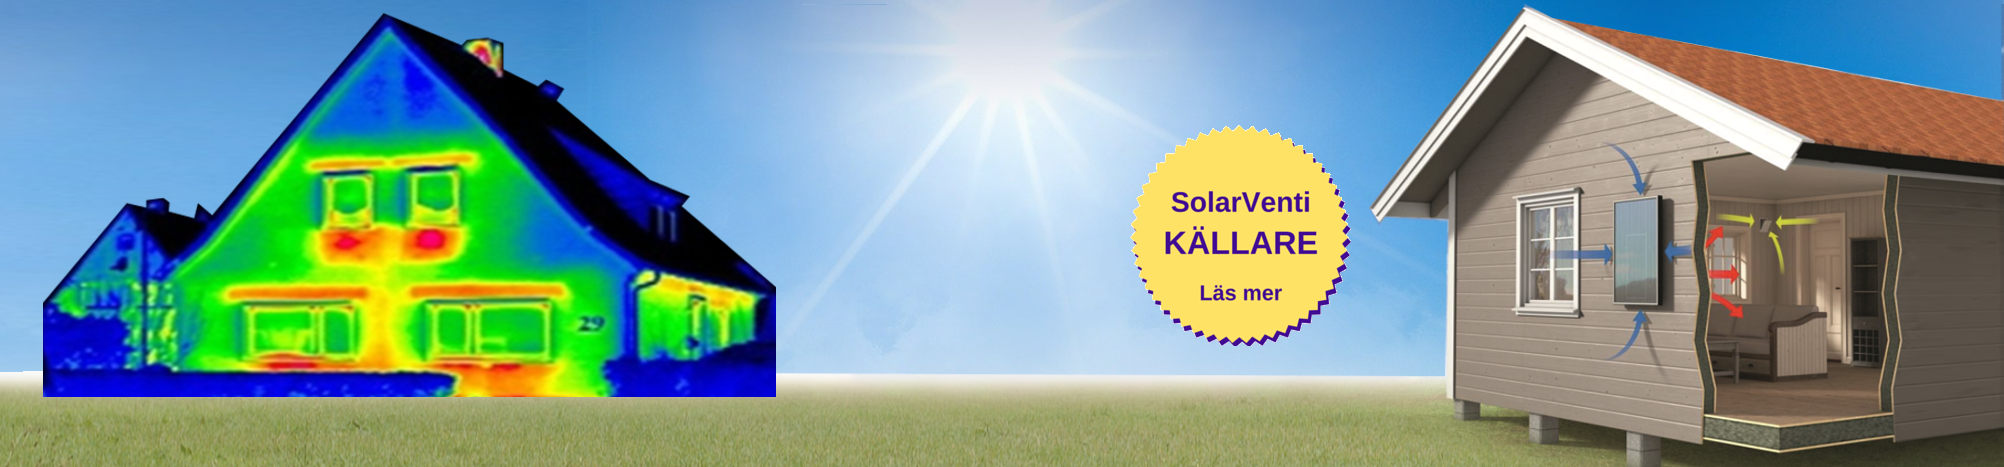 SolarVenti för källare